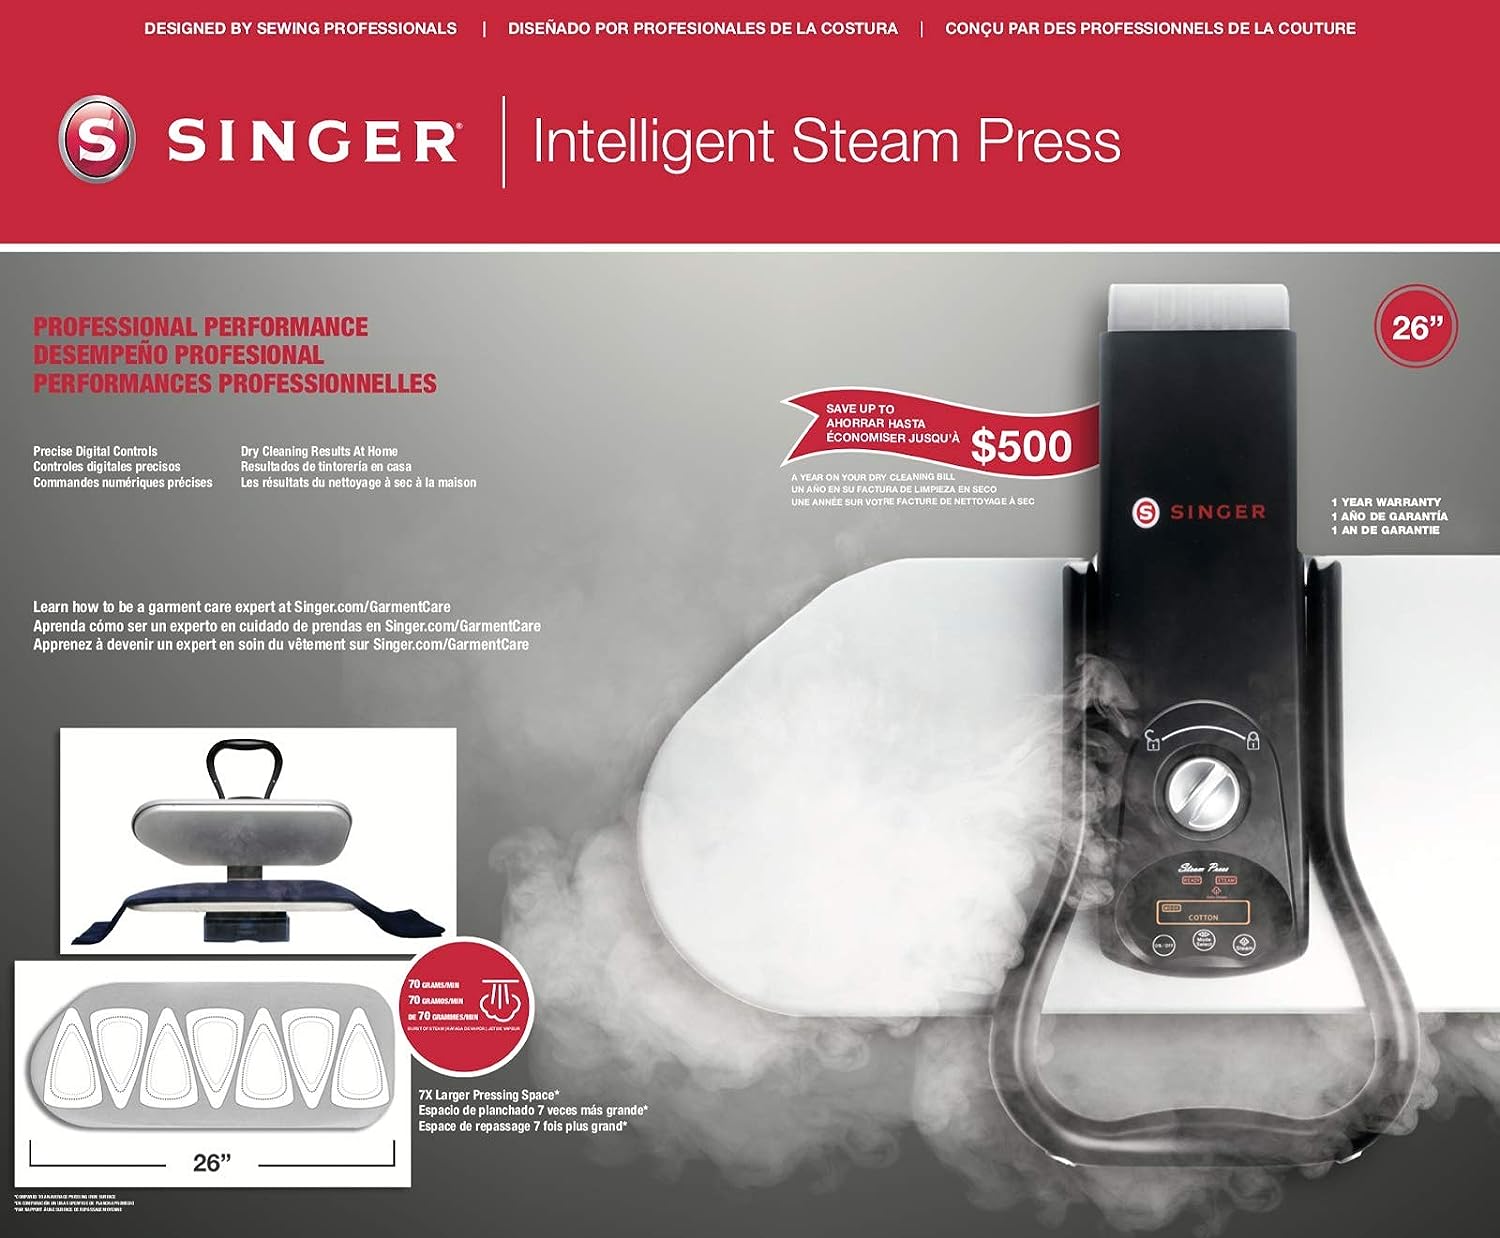 Singer ESP260T 26" Intelligent Steam Press